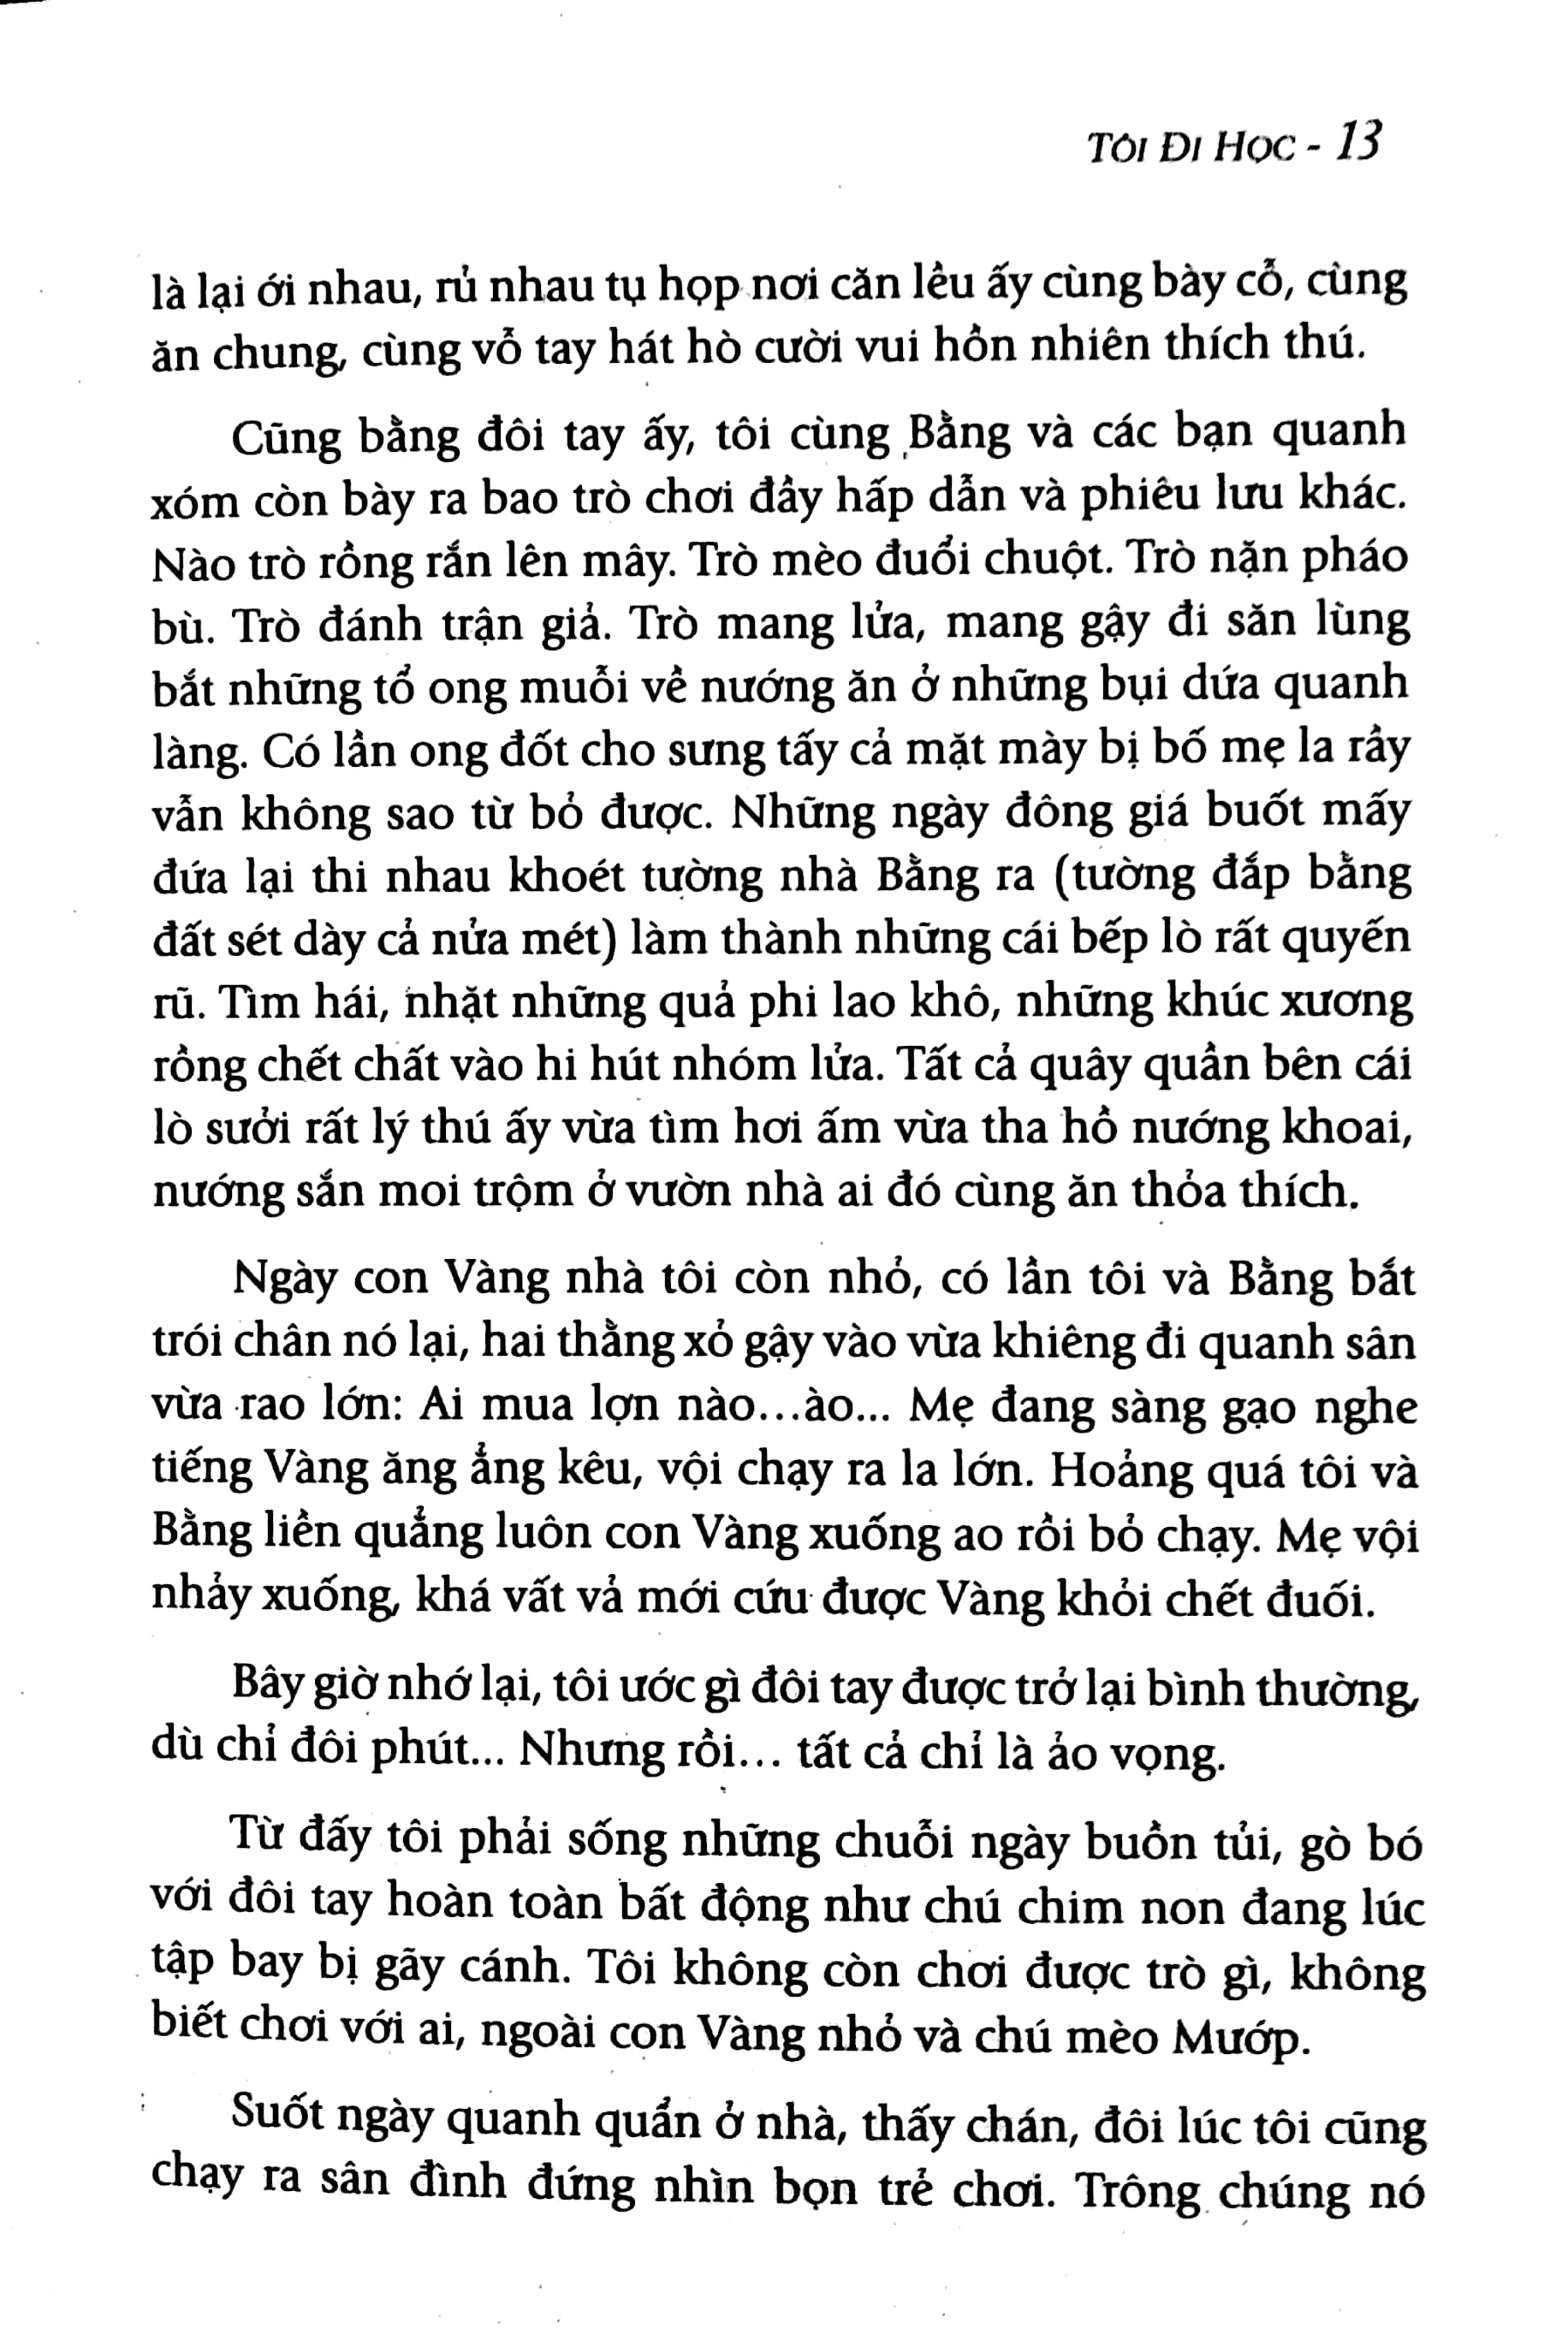 Tôi Đi Học - Nguyễn Ngọc Ký PDF